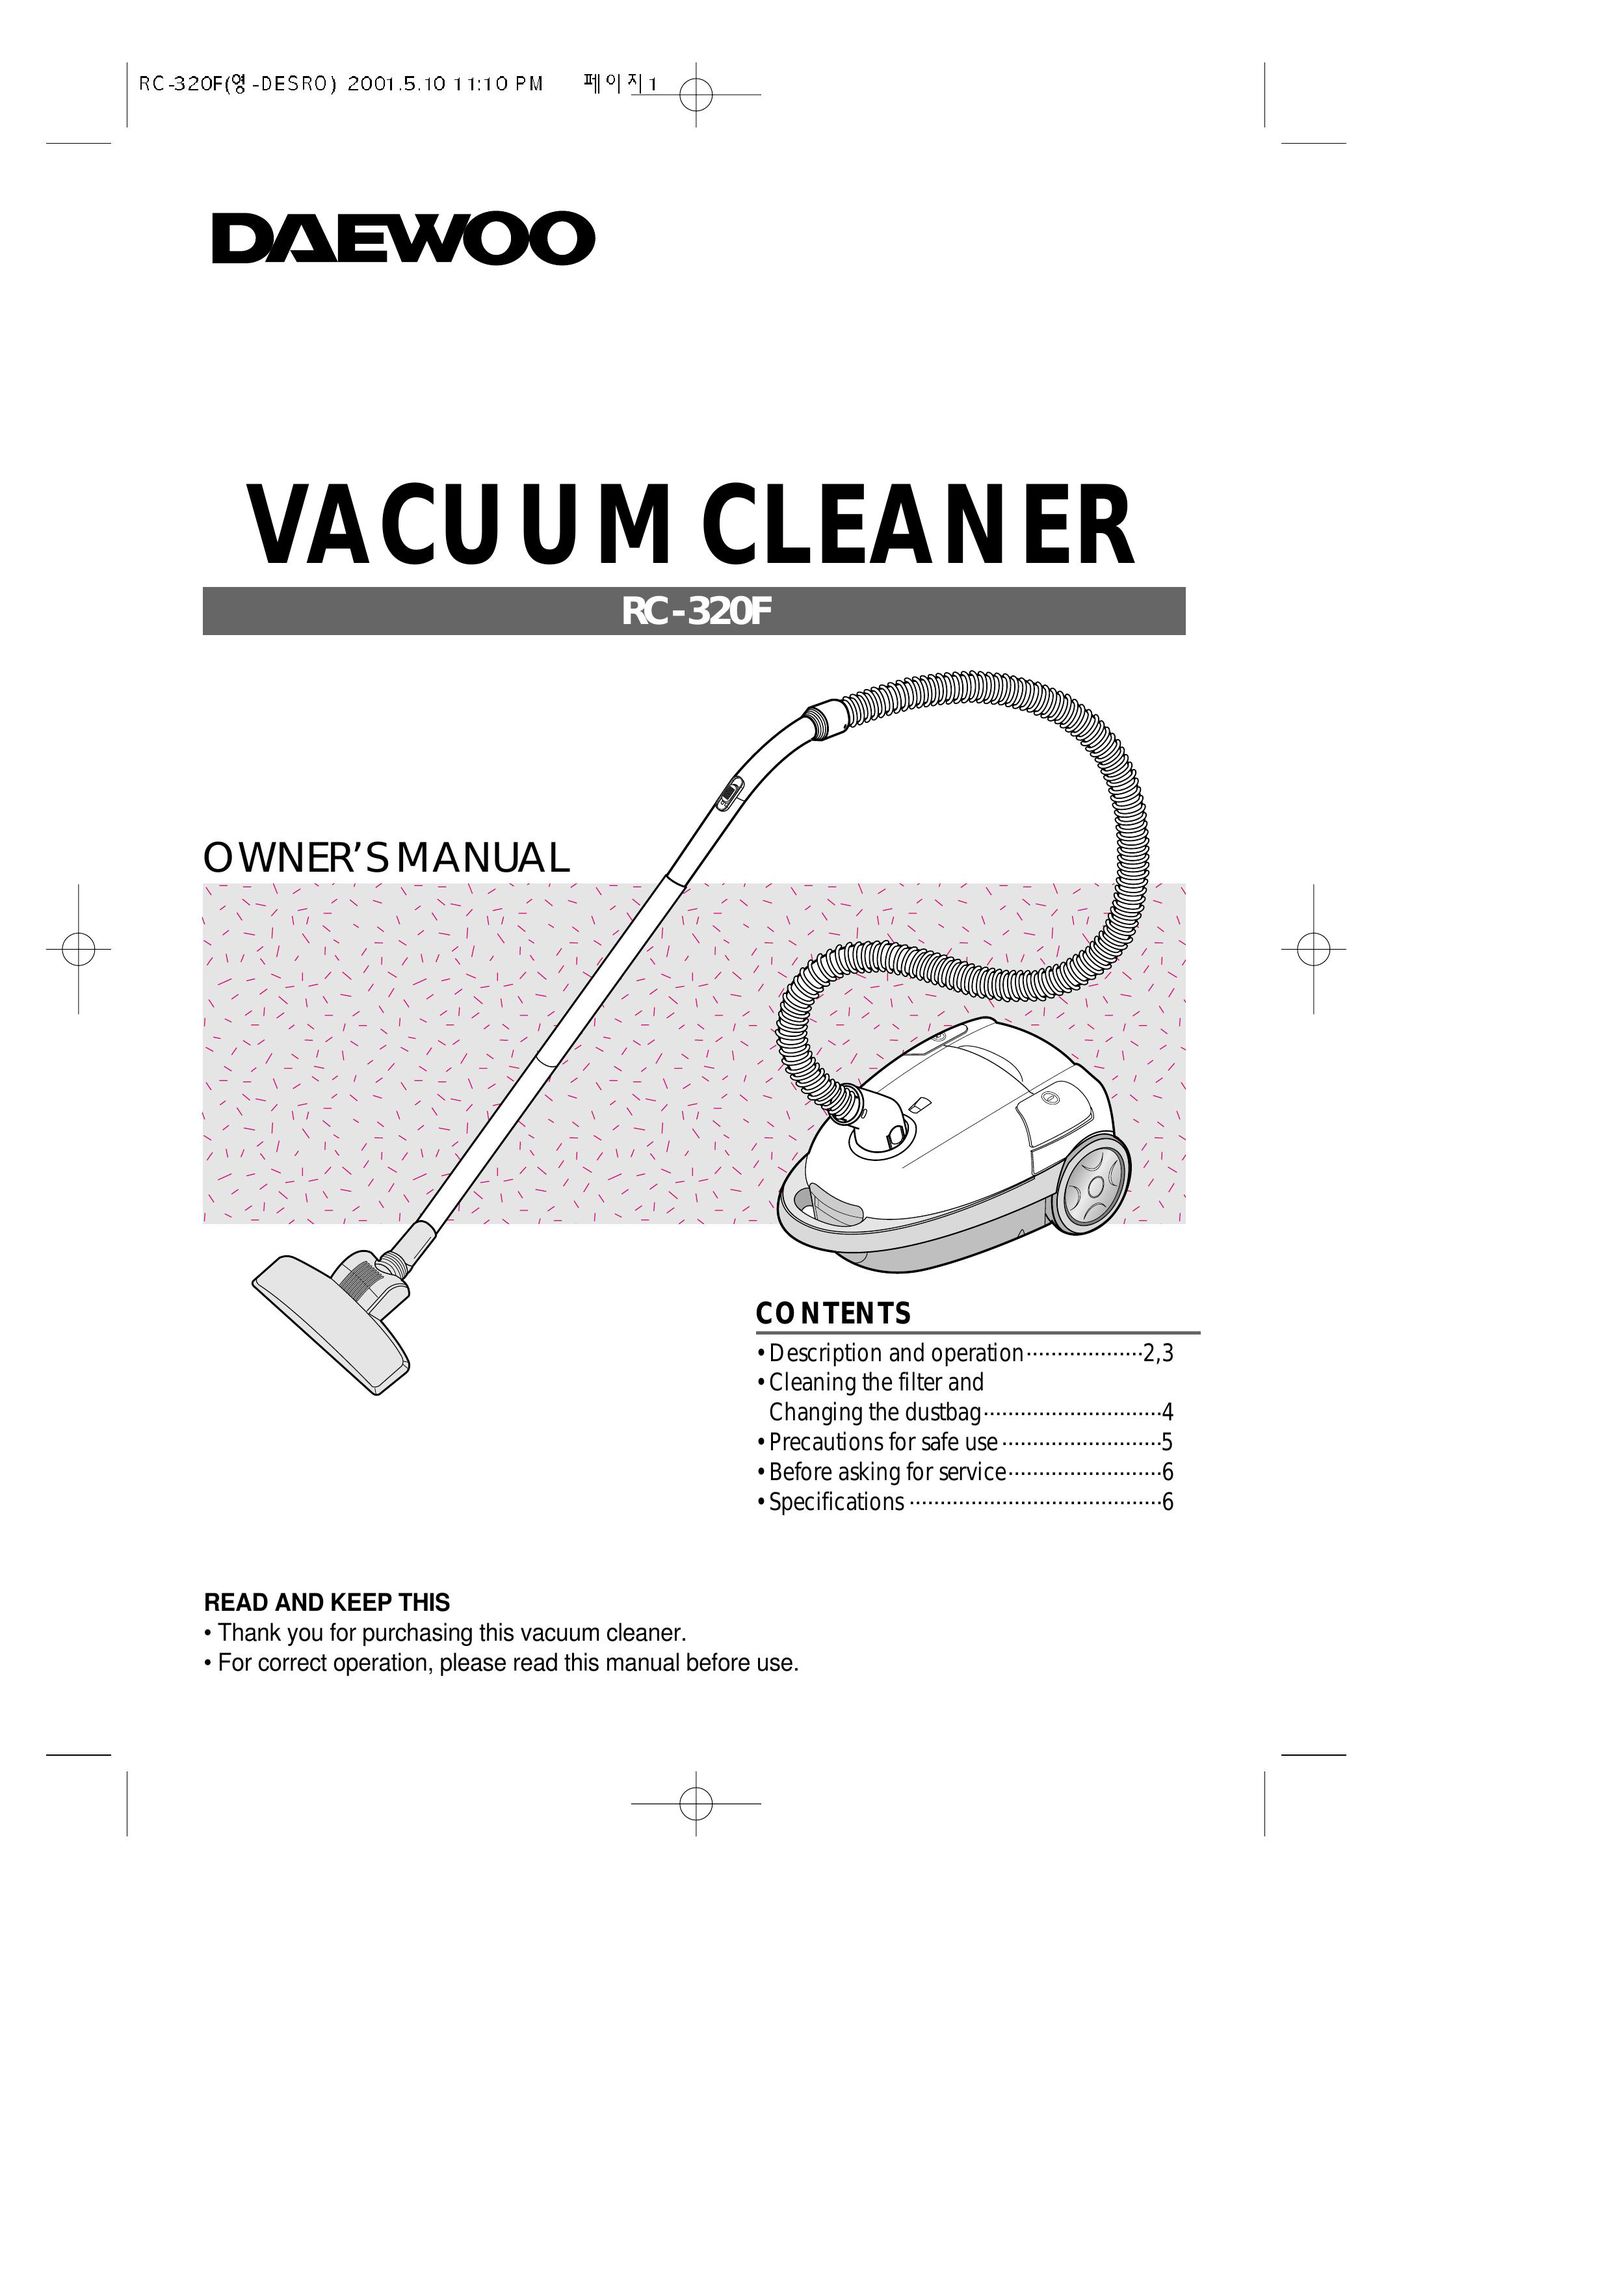 Daewoo RC-320F Vacuum Cleaner User Manual